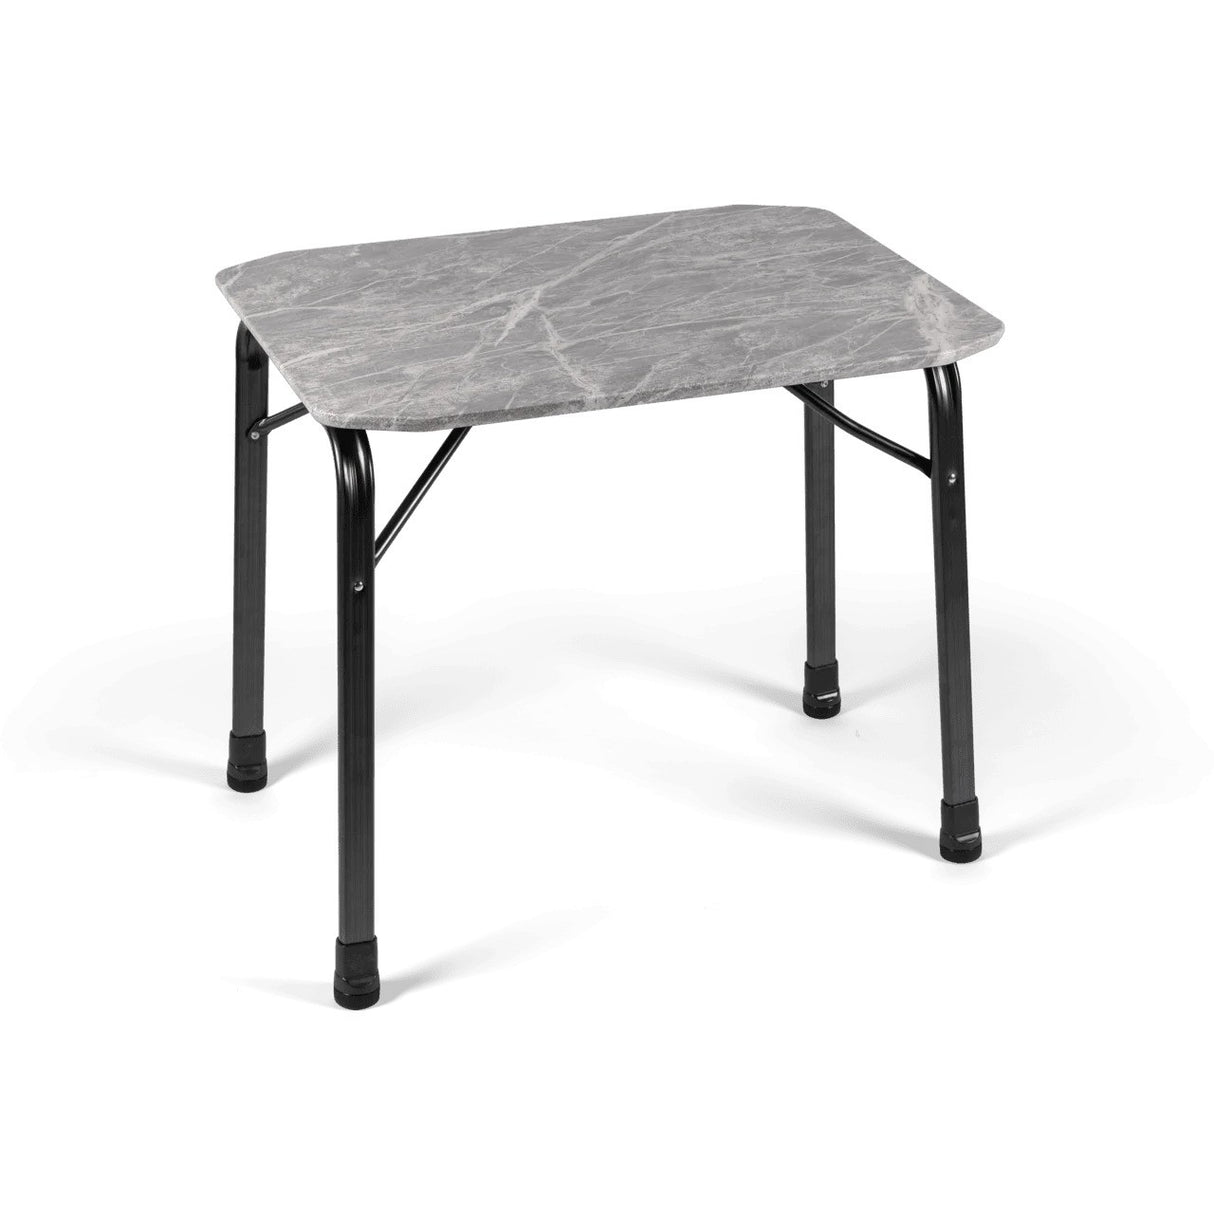 Dometic TPV 80 Folding Table